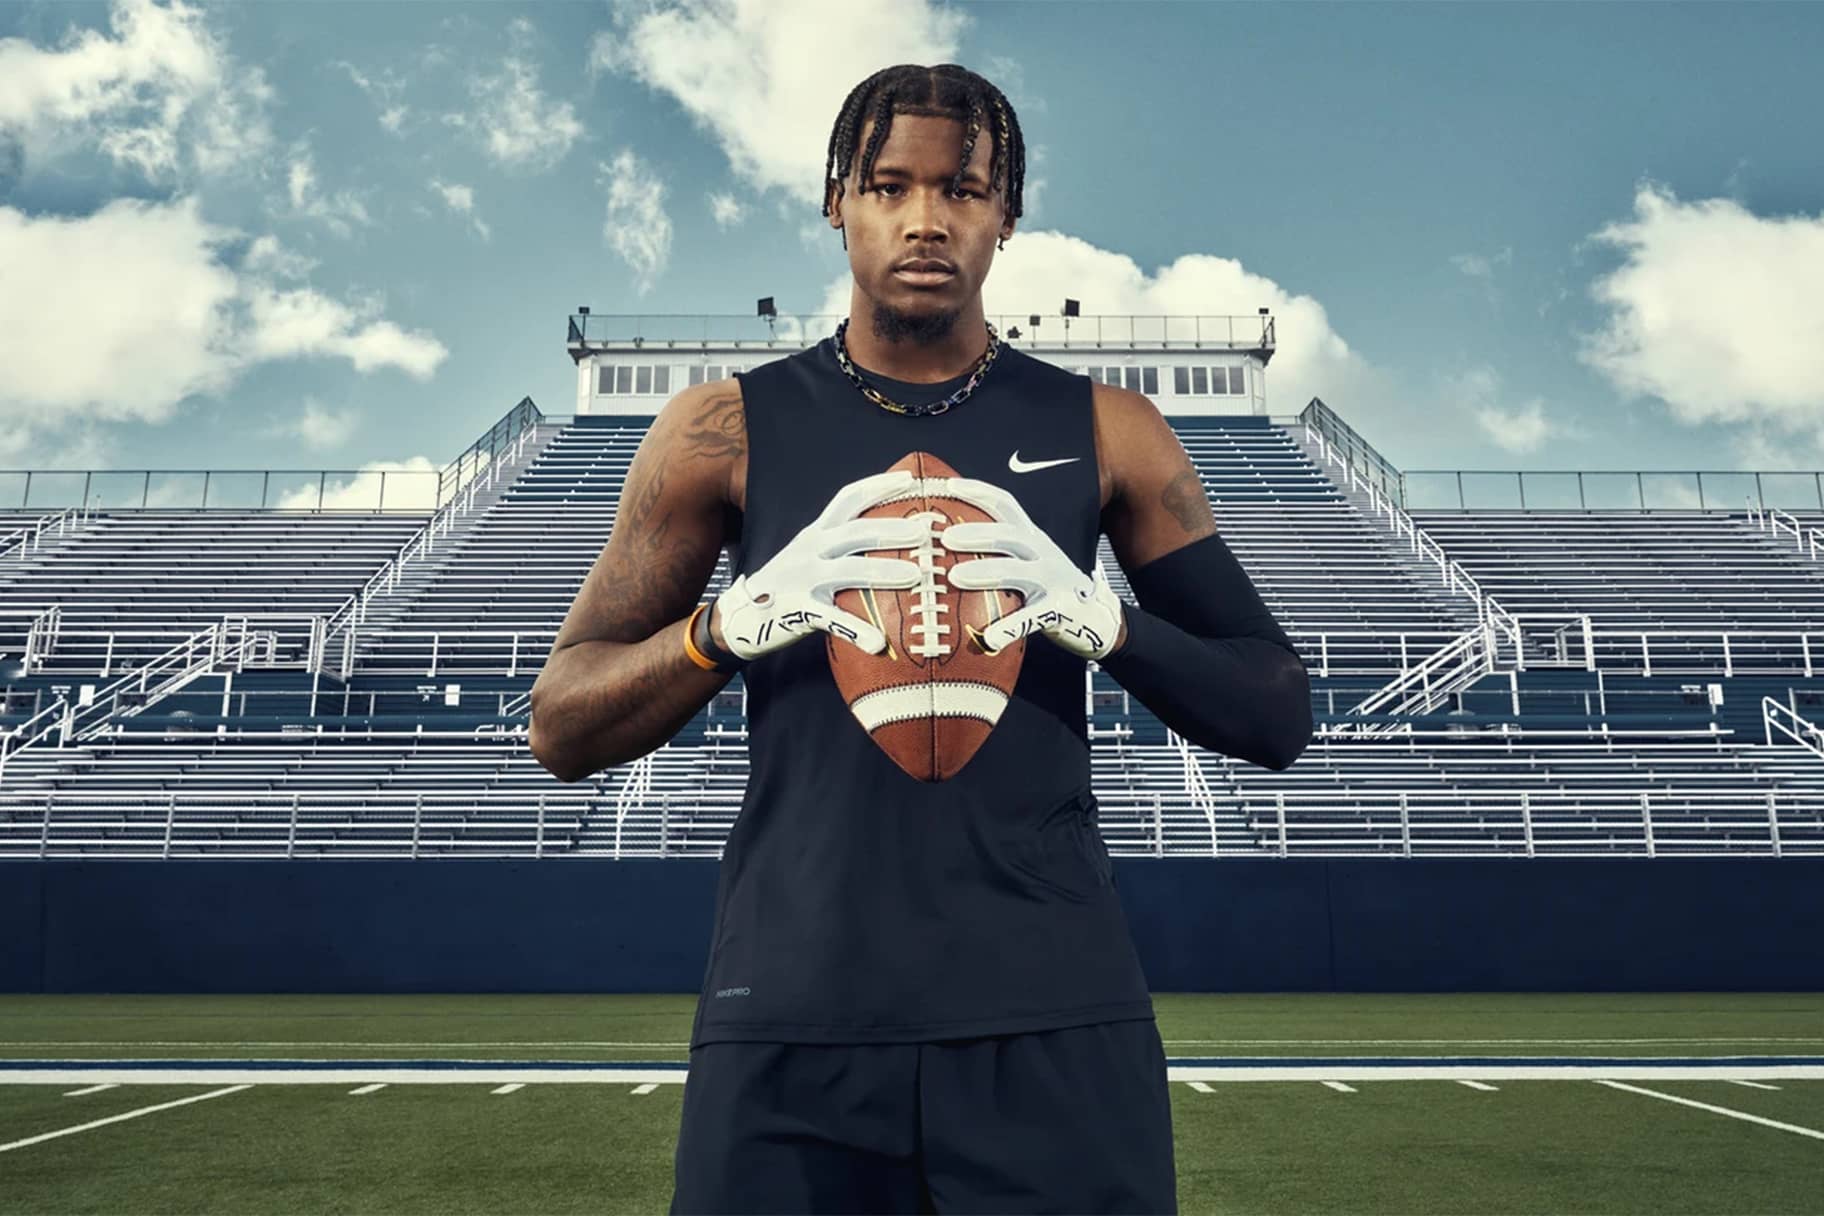 De beste Nike American Football handschoenen voor dit seizoen